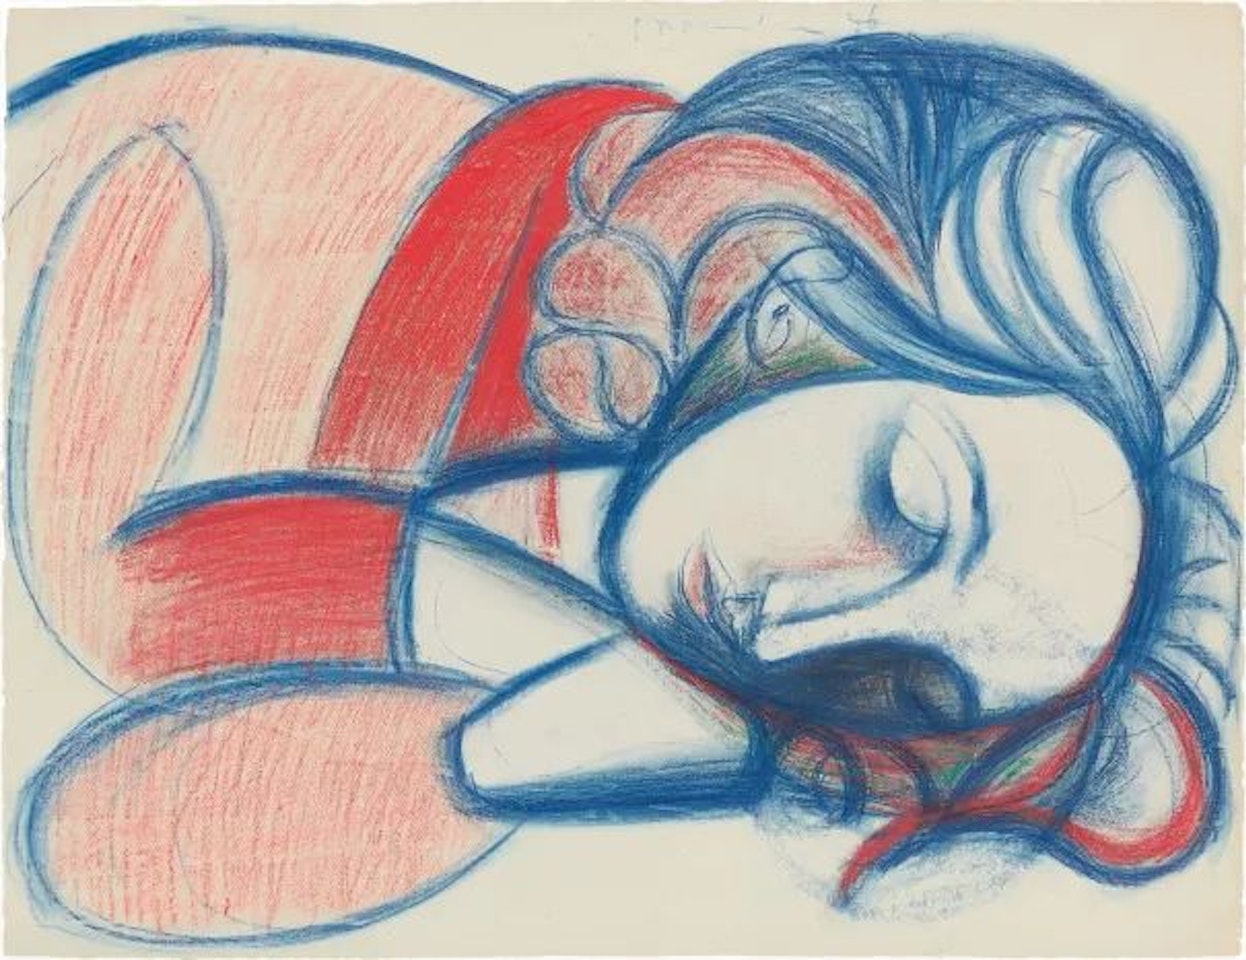 Portrait de femme endormie. III by Pablo Picasso